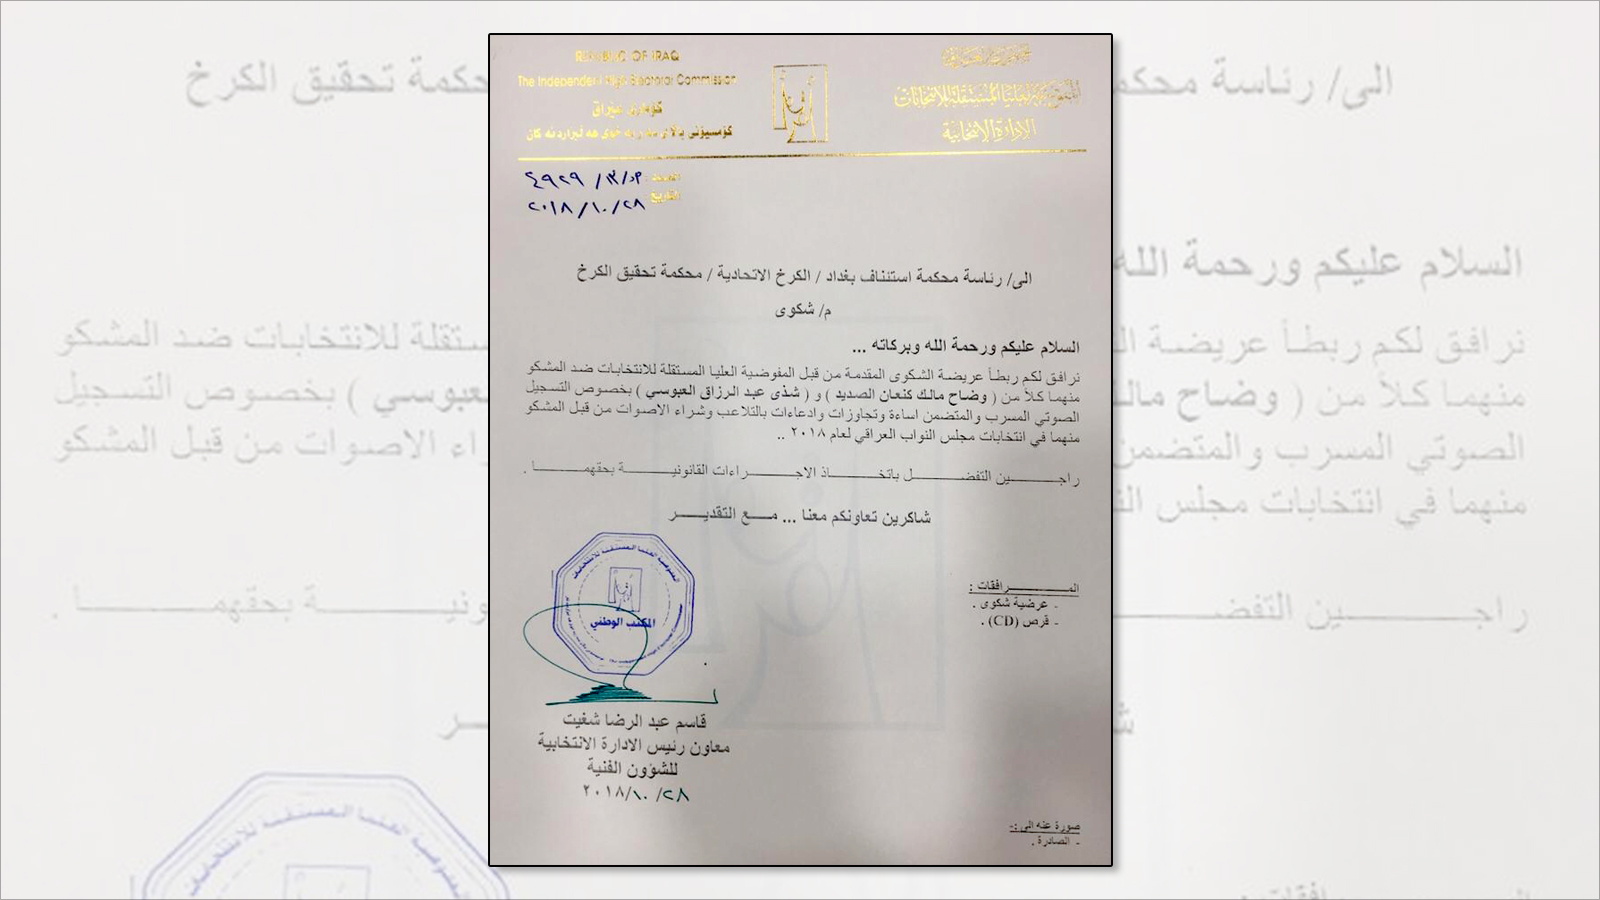 ‪الوثيقة الصادرة من مفوضية الانتخابات العراقية تتضمن شكوى ضد العبوس والصديد‬  (مواقع التواصل)